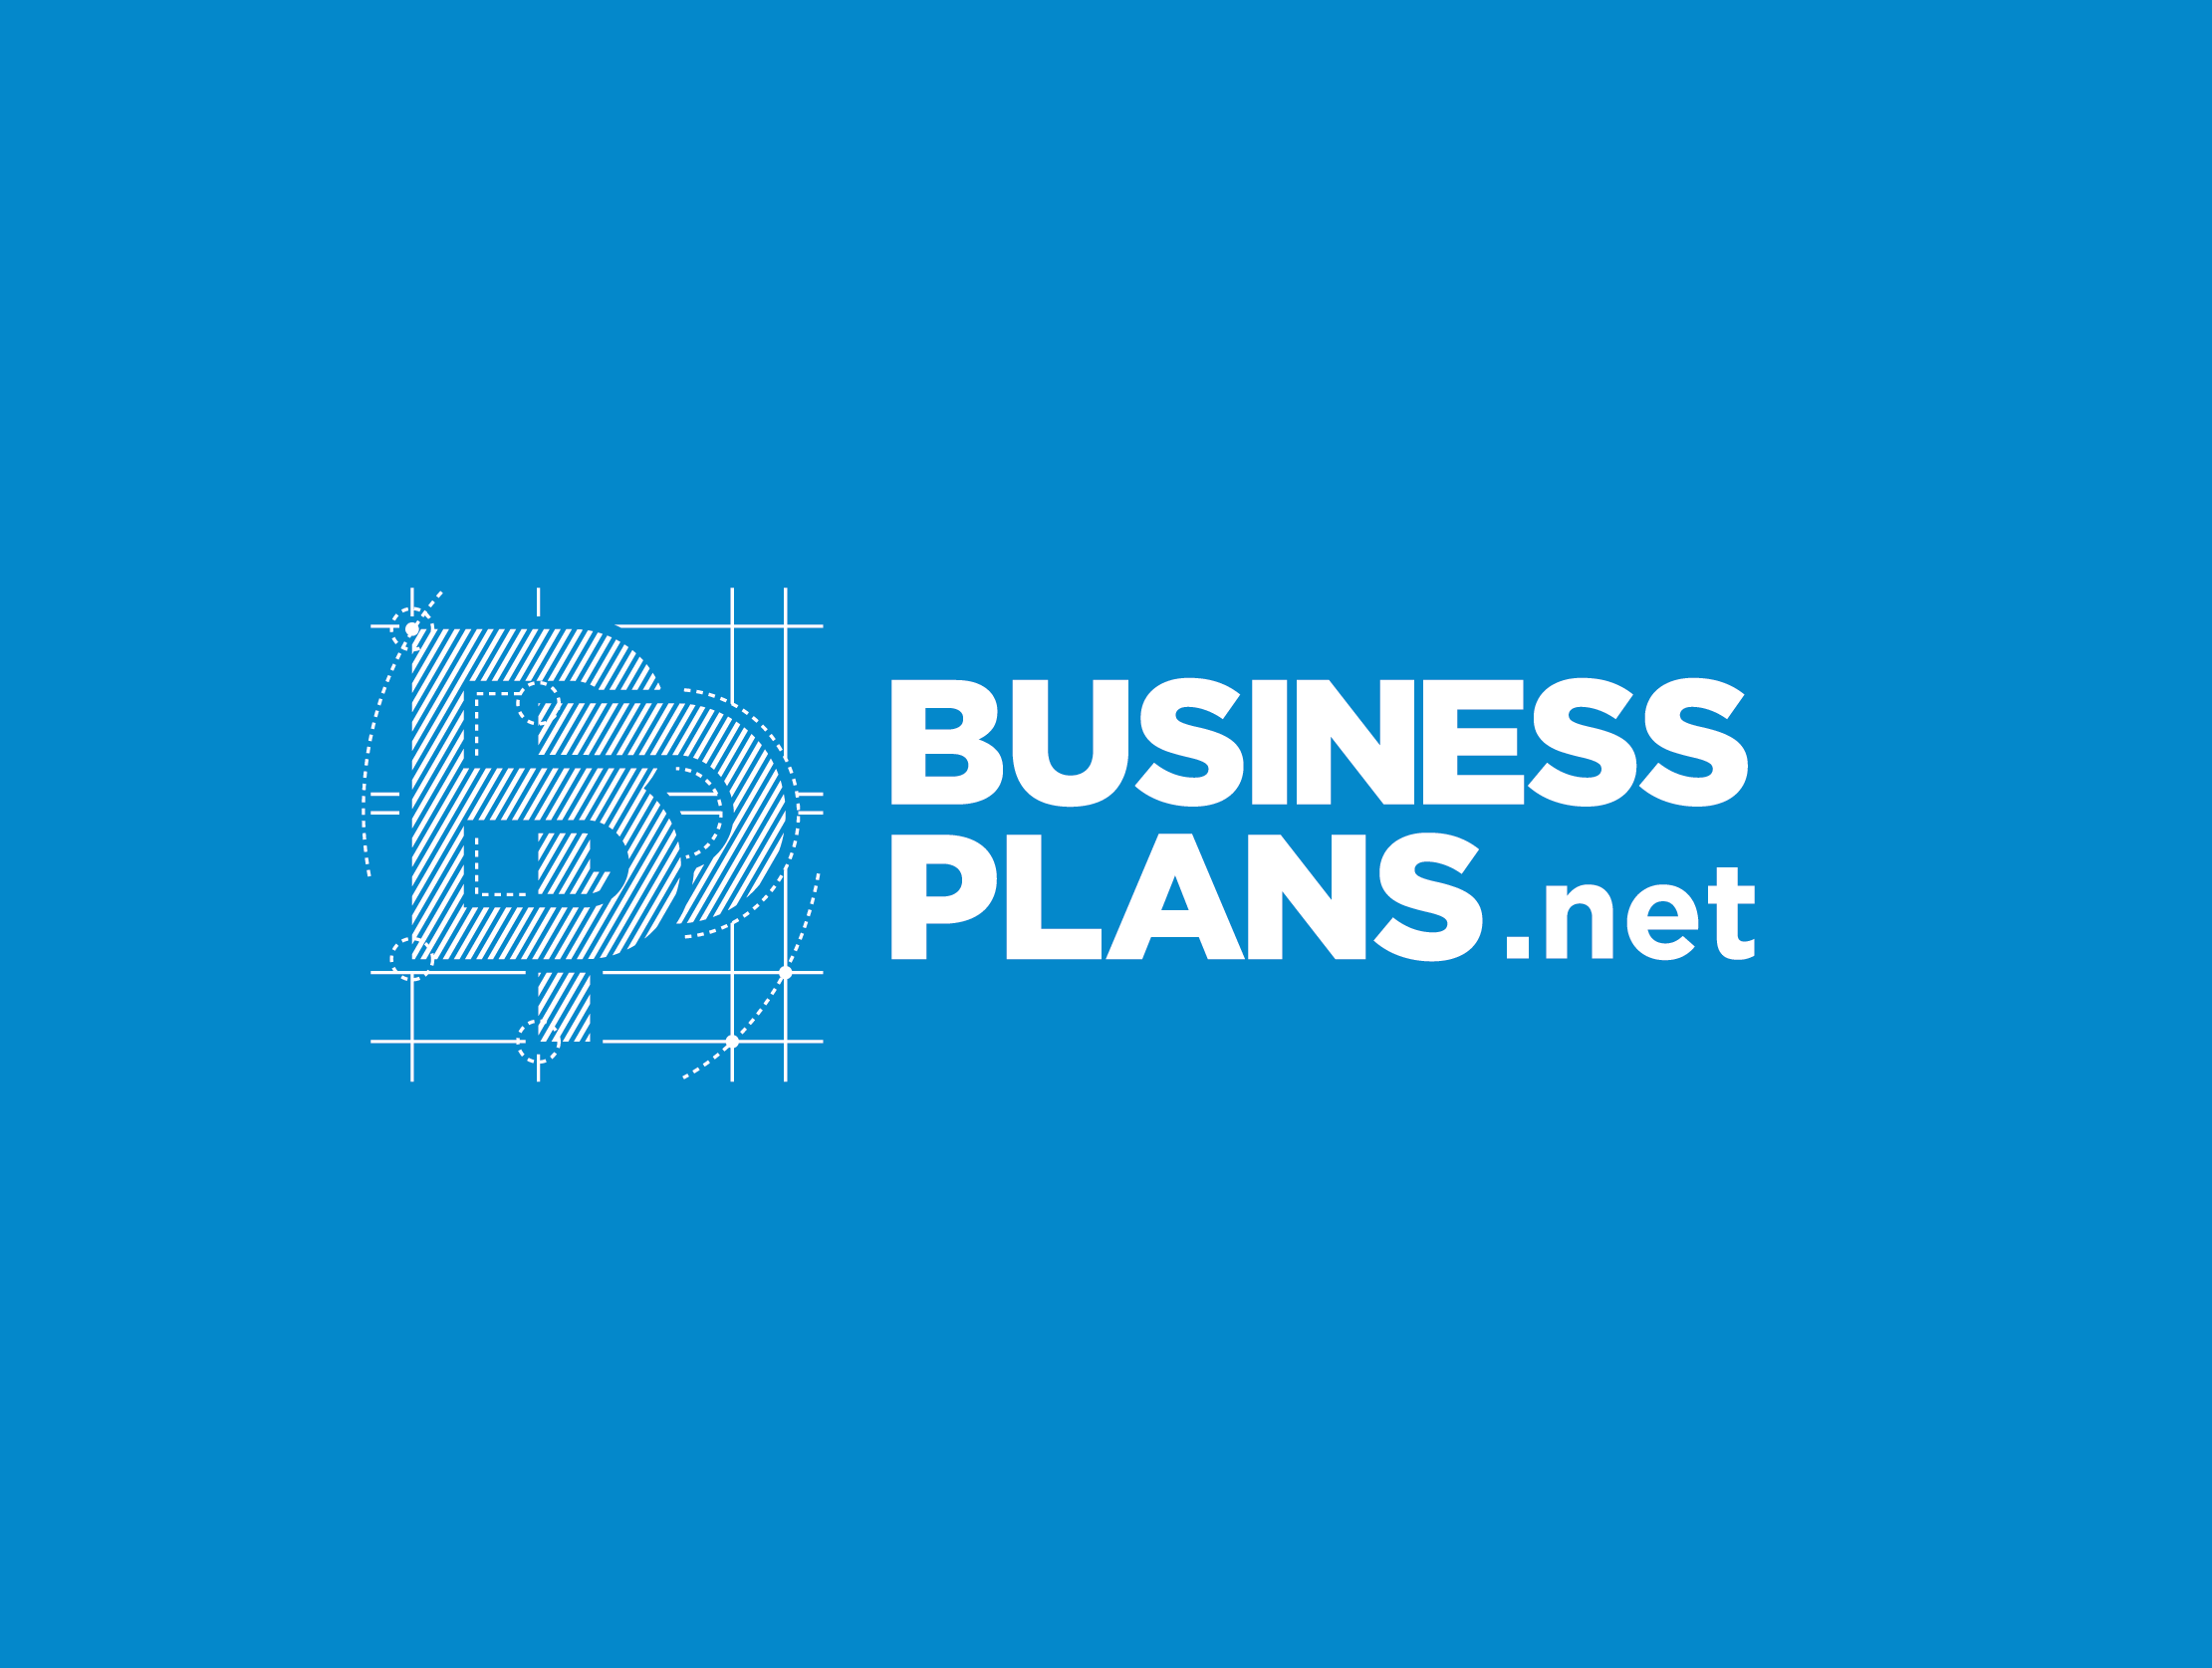 Image of Business Plan Logo